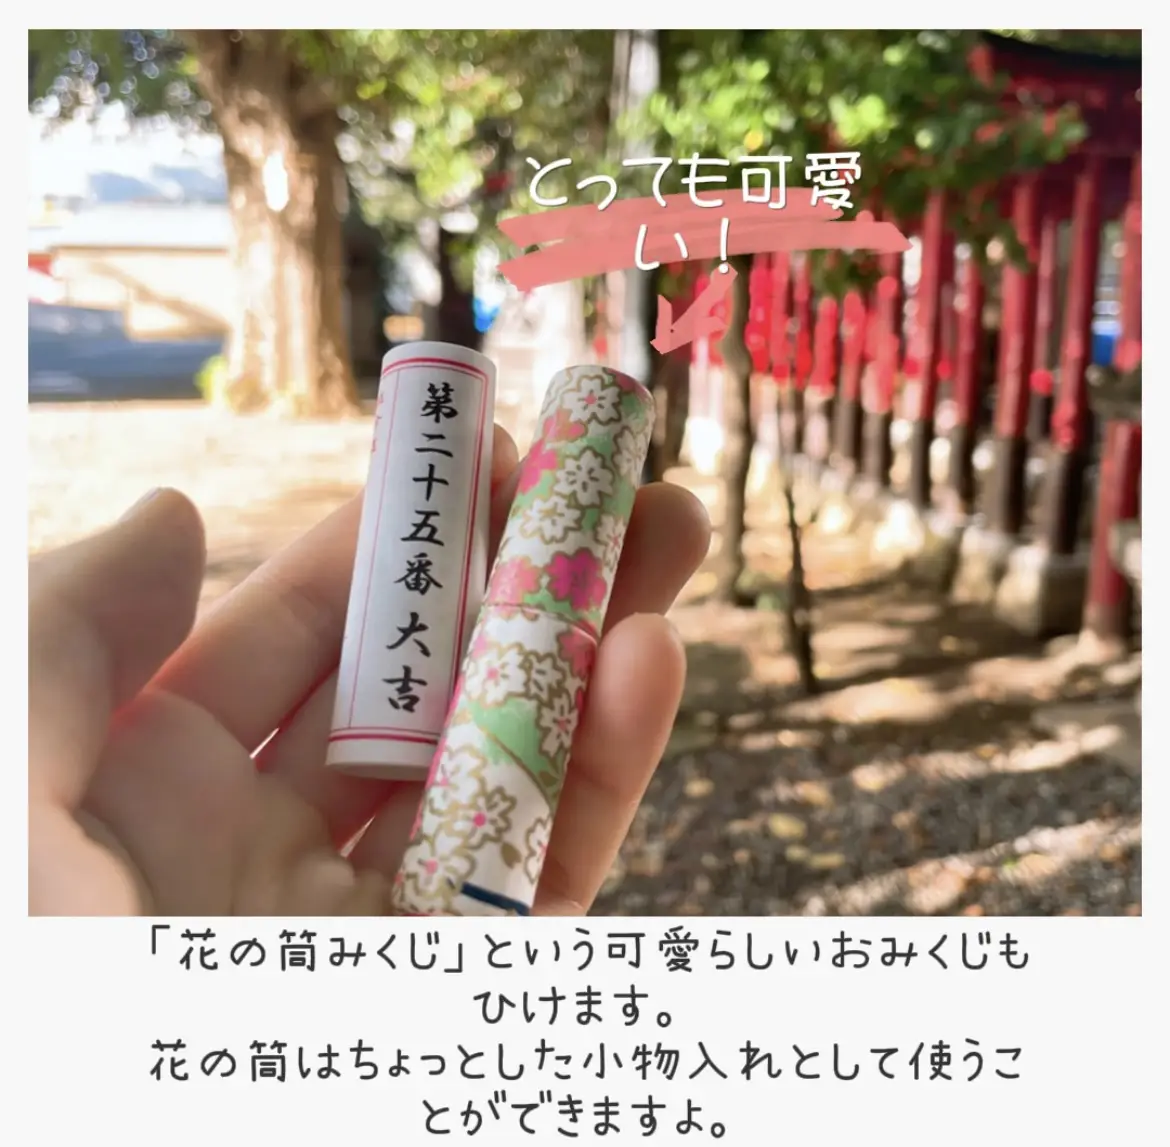 新宿花園神社 - Lemon8検索